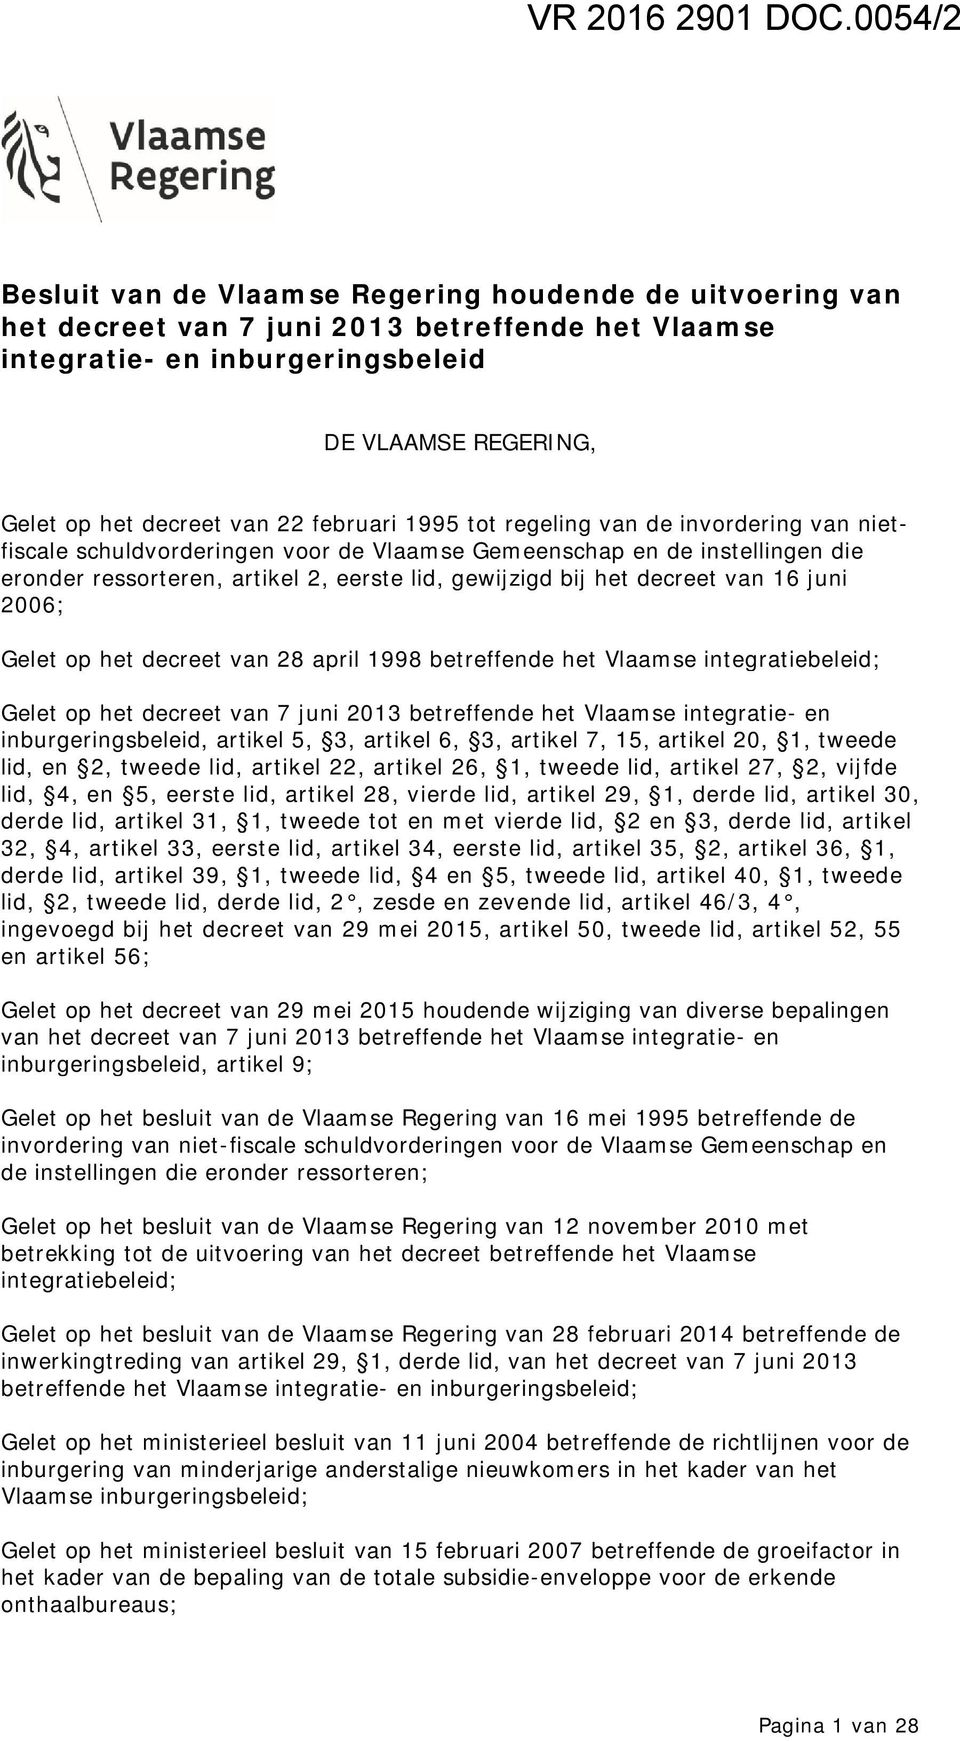 22 februari 1995 tot regeling van de invordering van nietfiscale schuldvorderingen voor de Vlaamse Gemeenschap en de instellingen die eronder ressorteren, artikel 2, eerste lid, gewijzigd bij het